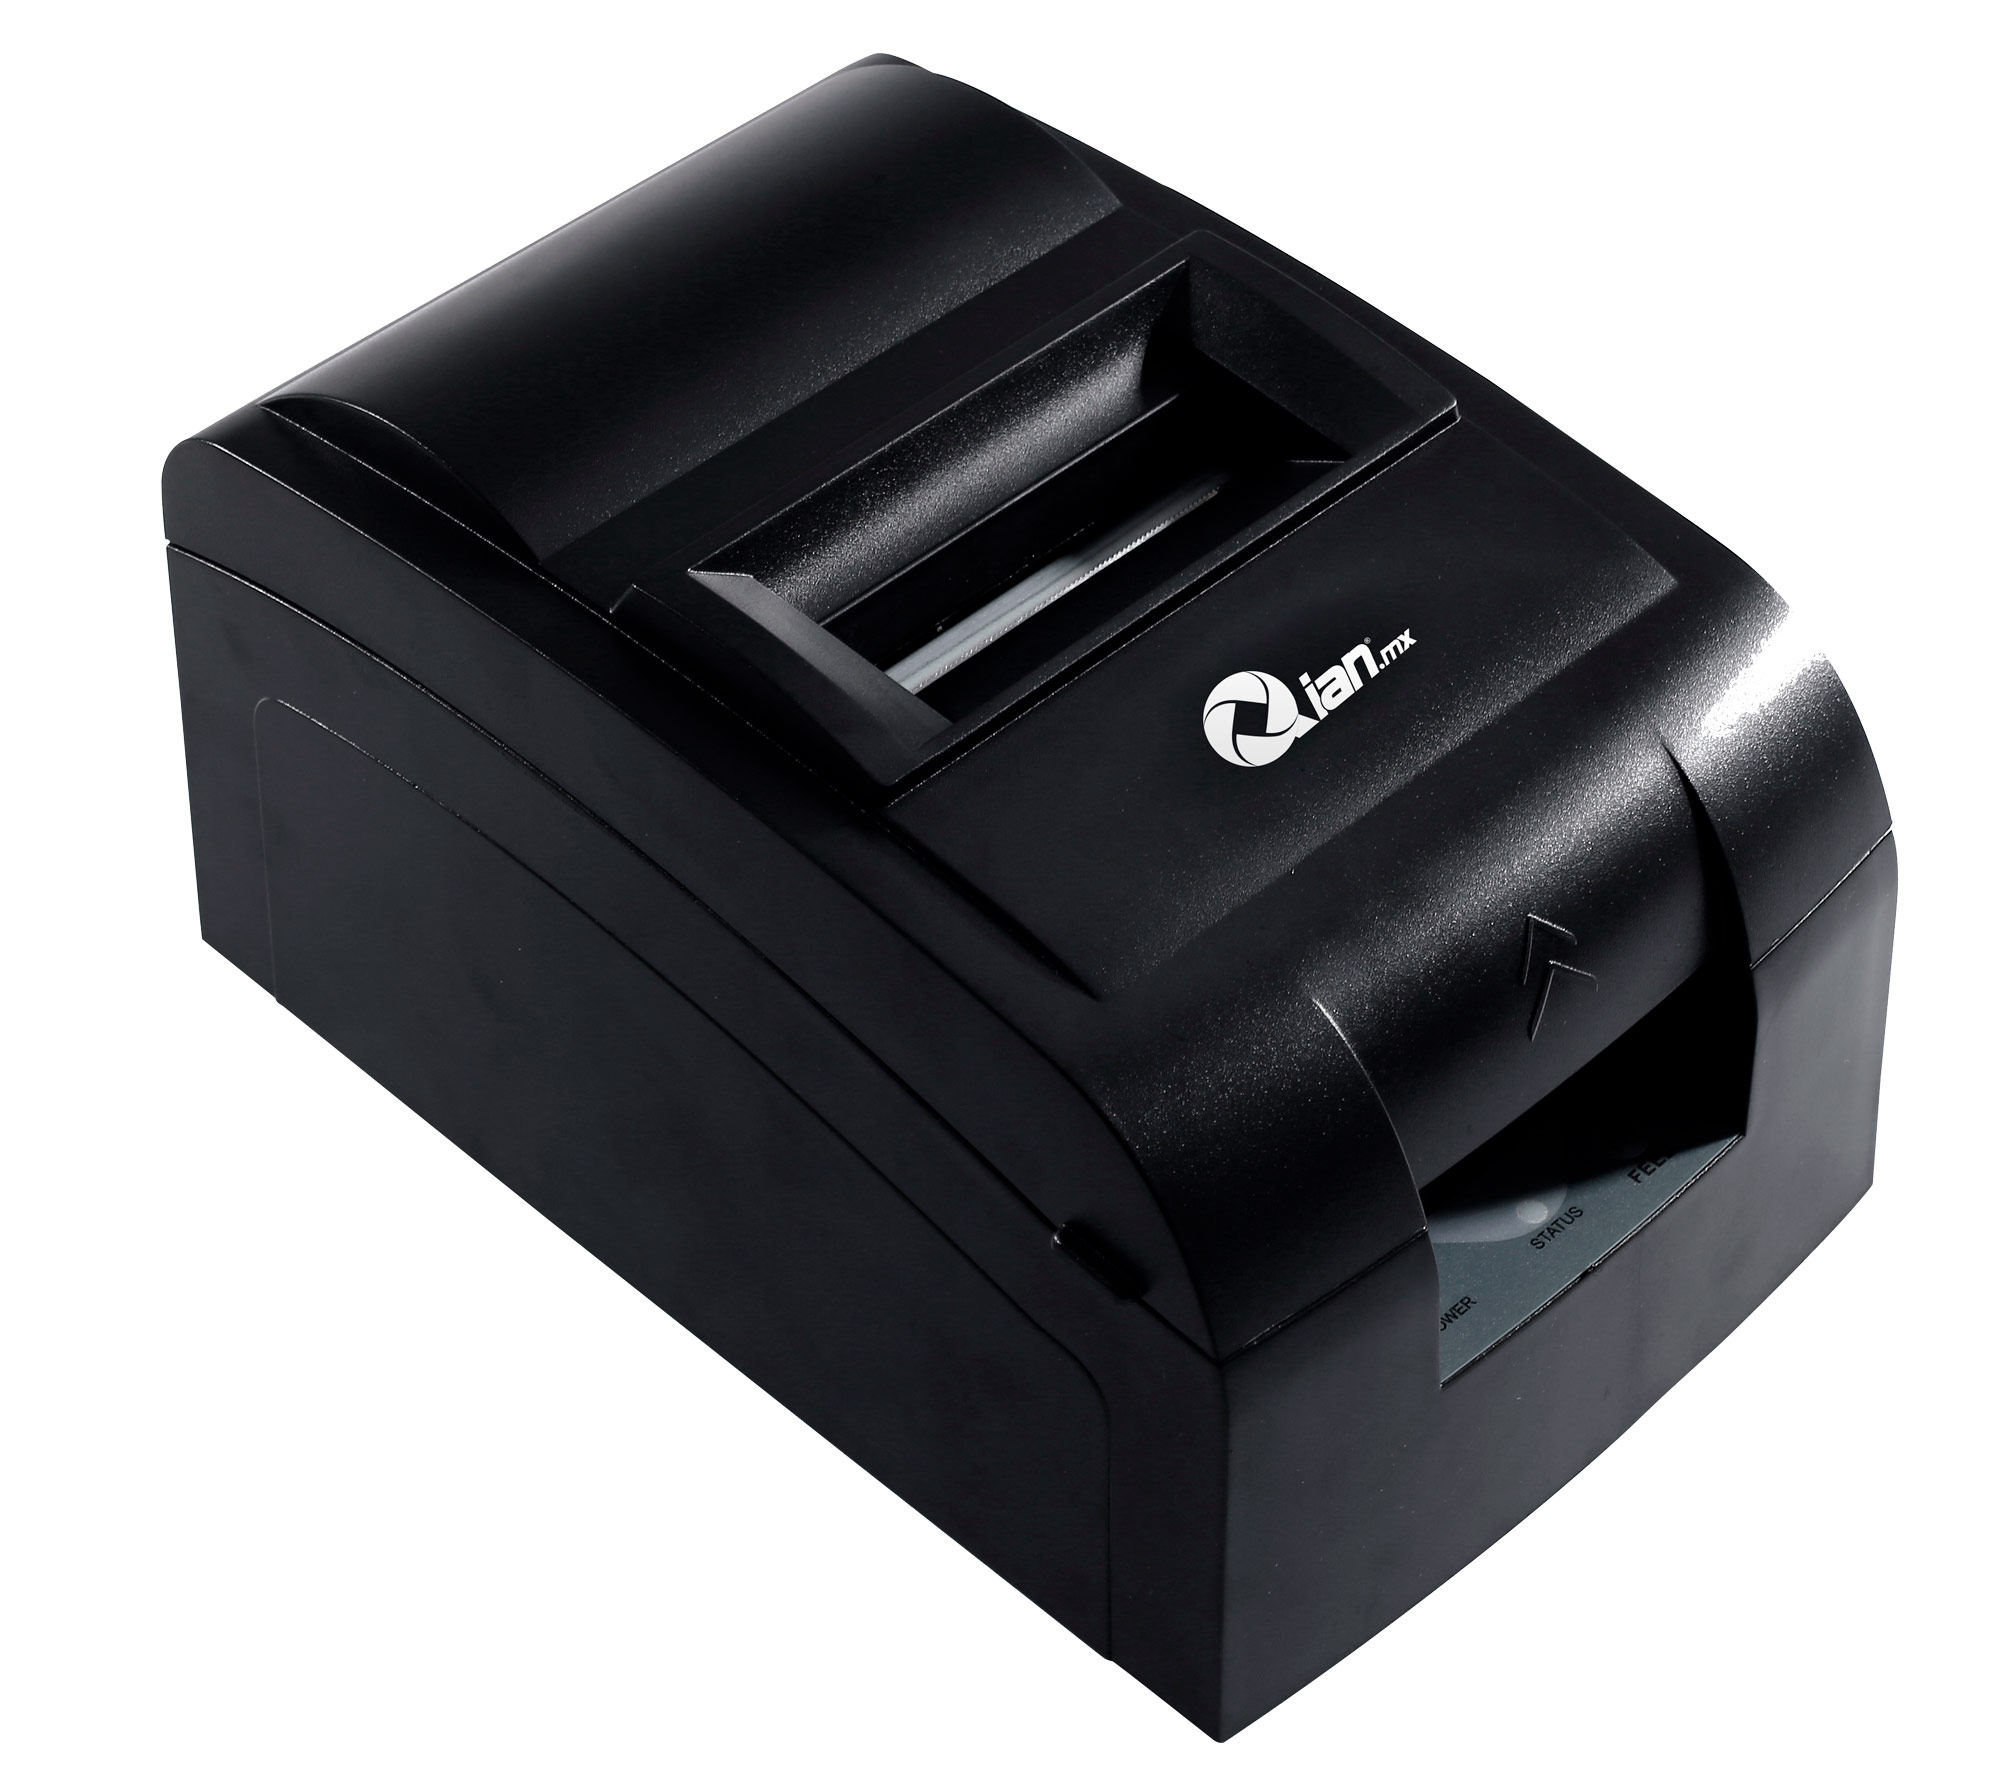 MINIPRINTER QIAN QIMP761701 ANJET 76 MATRIZ D PUNTO USB CORT/MAN 76MM - QIAN